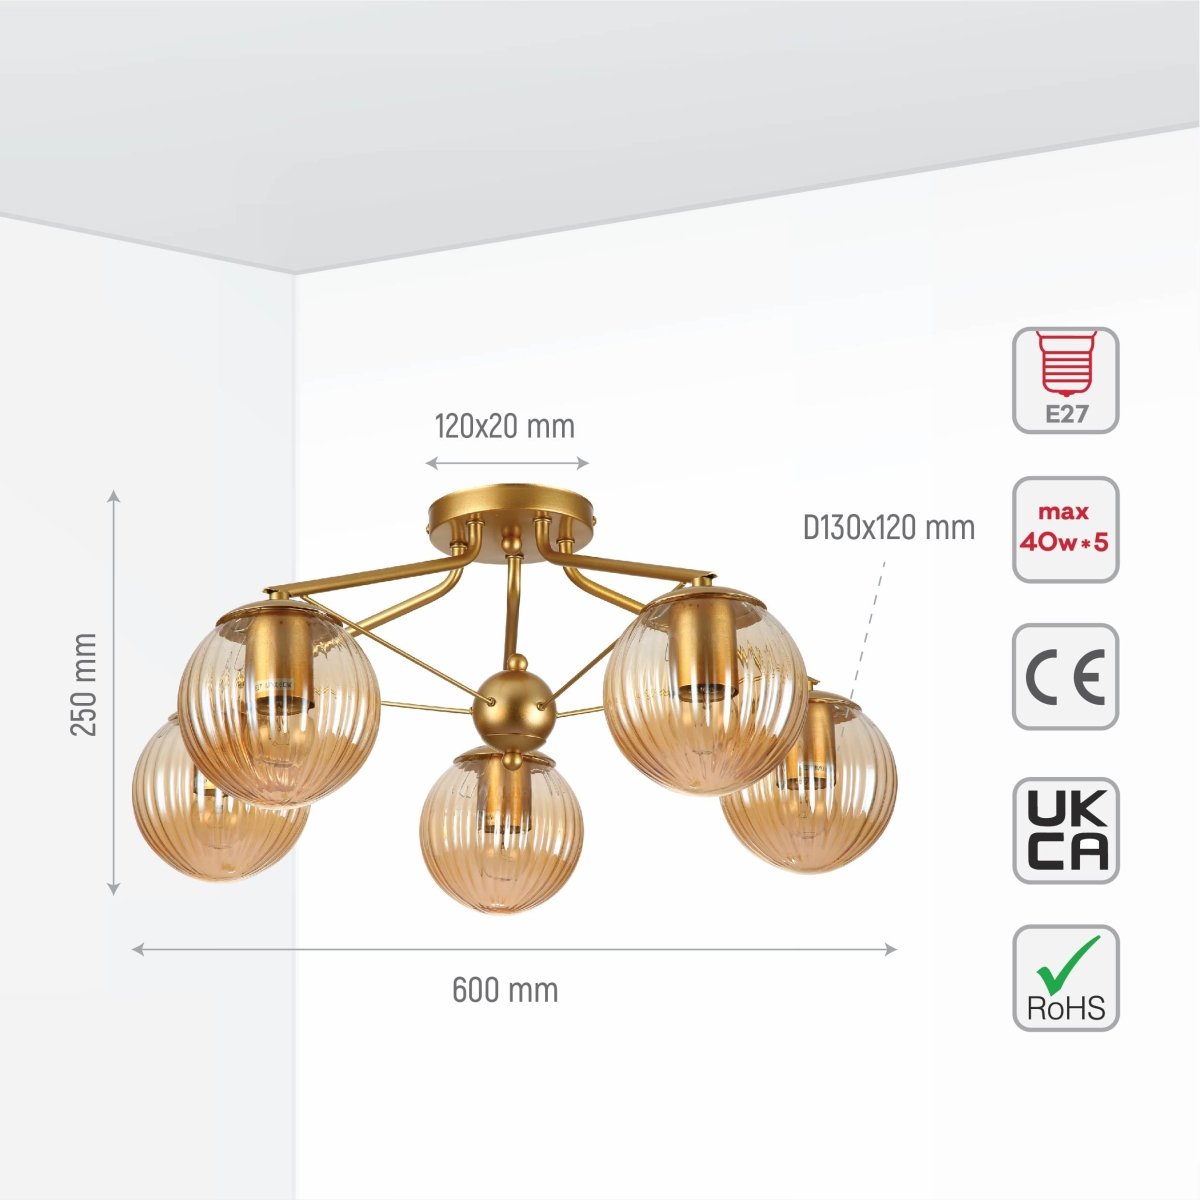 Size and specs of Amber Reeded Globe Gold Semi Flush Ceiling Light E27 | TEKLED 159-17680